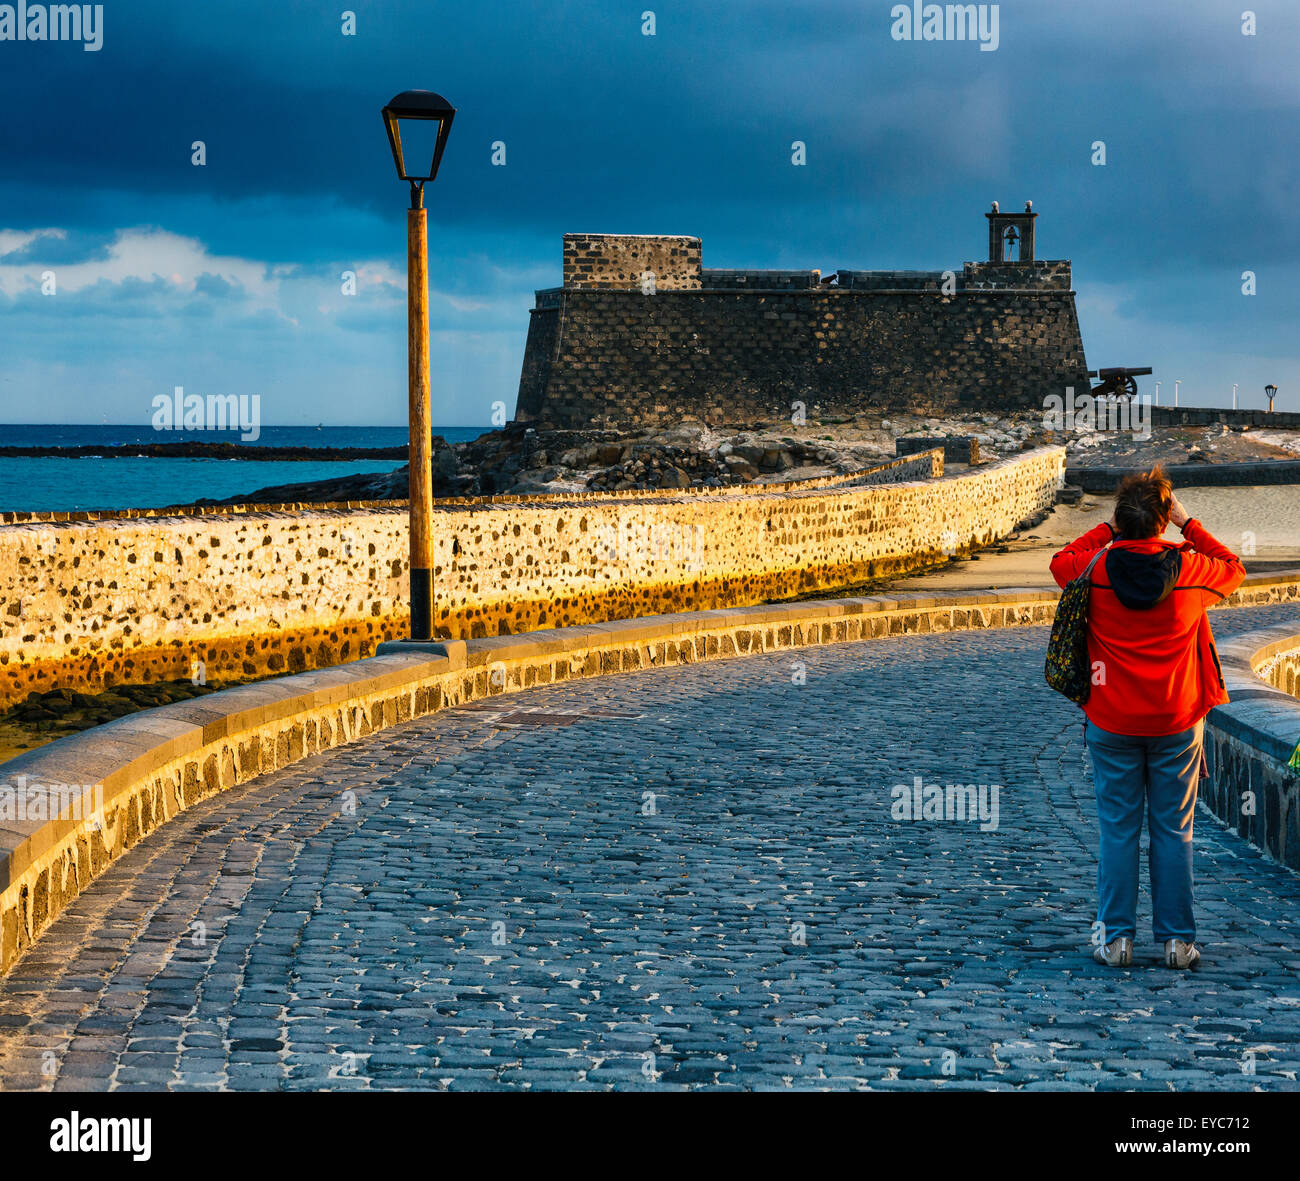 Die Festung. Burg von San Gabriel. Arrecife. Lanzarote, Kanarische Inseln, Spanien, Europa. Stockfoto